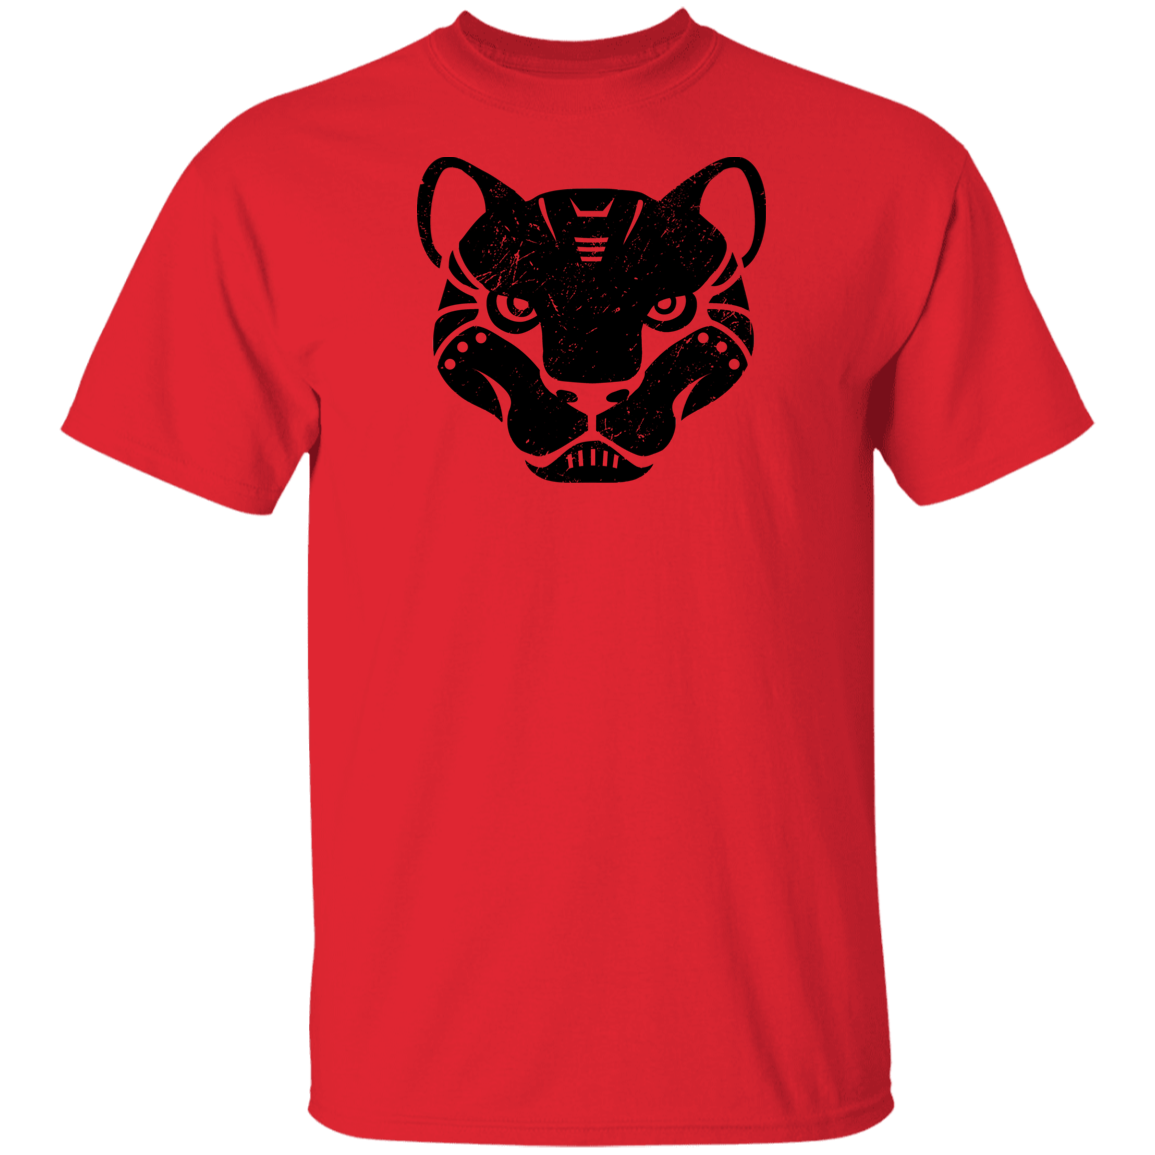 Black Distressed Emblem T-Shirt for Kids (Panther/Slash)